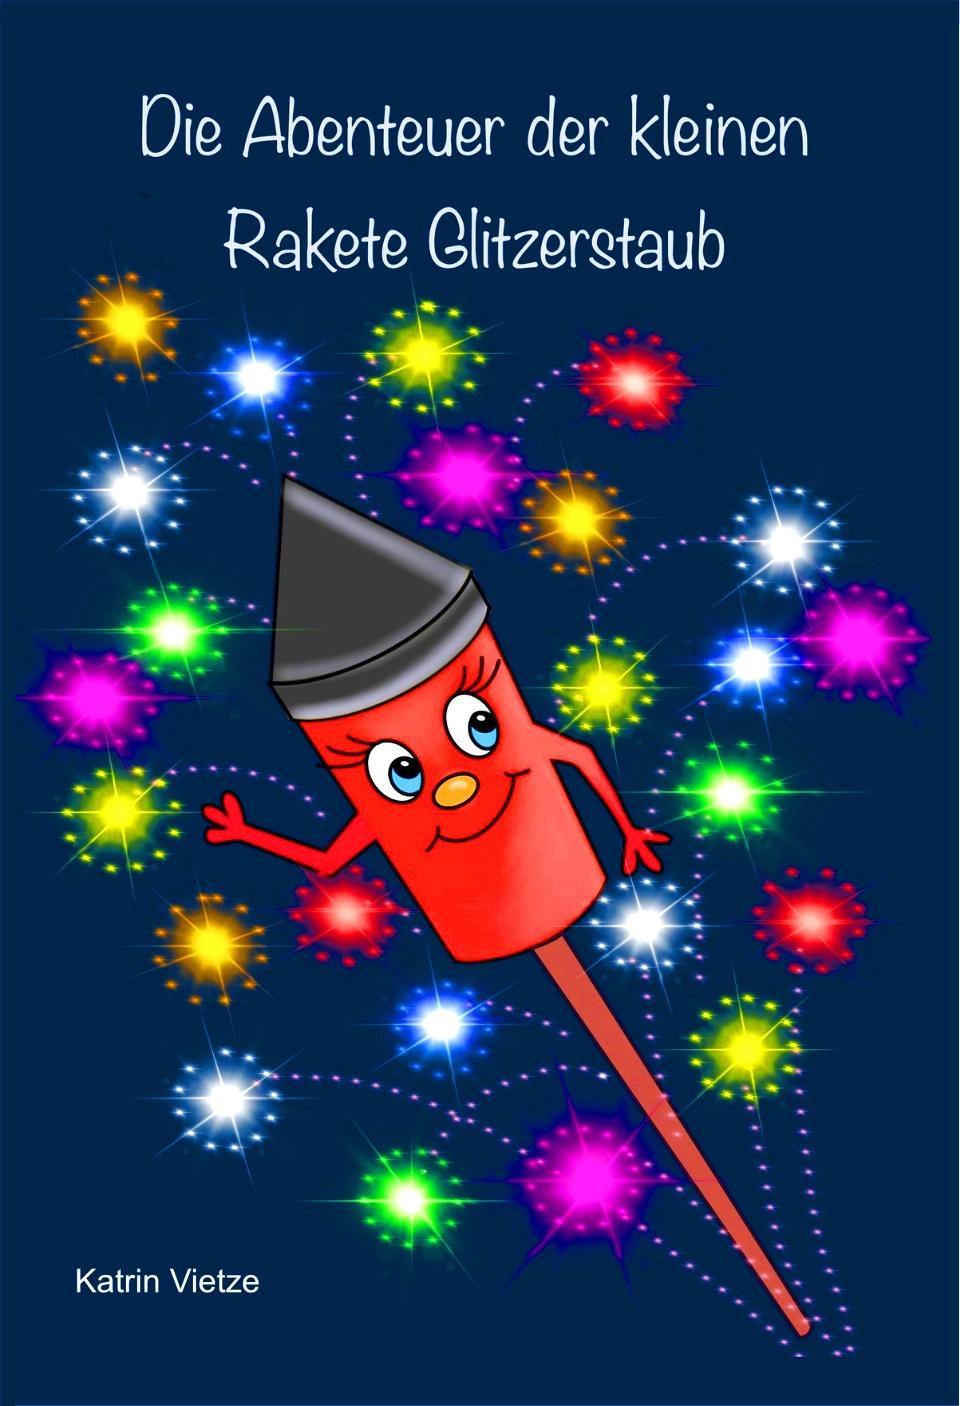 Kniha Die Abenteuer der kleinen Rakete Glitzerstaub Katrin Vietze